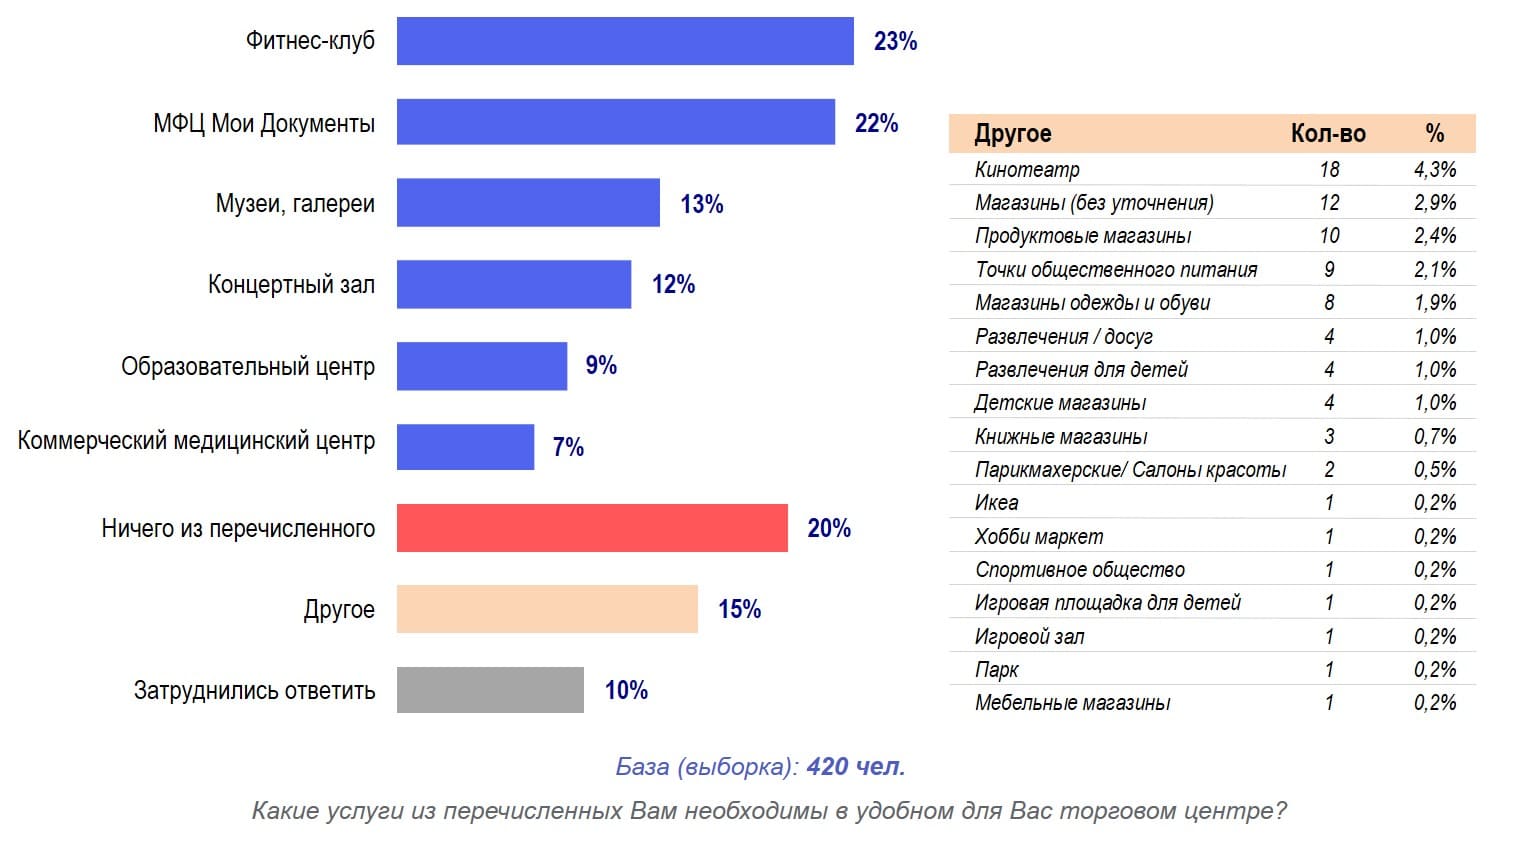 Сканмаркет (количественный опрос москвичей): Услуги, необходимые посетителям торговых центров